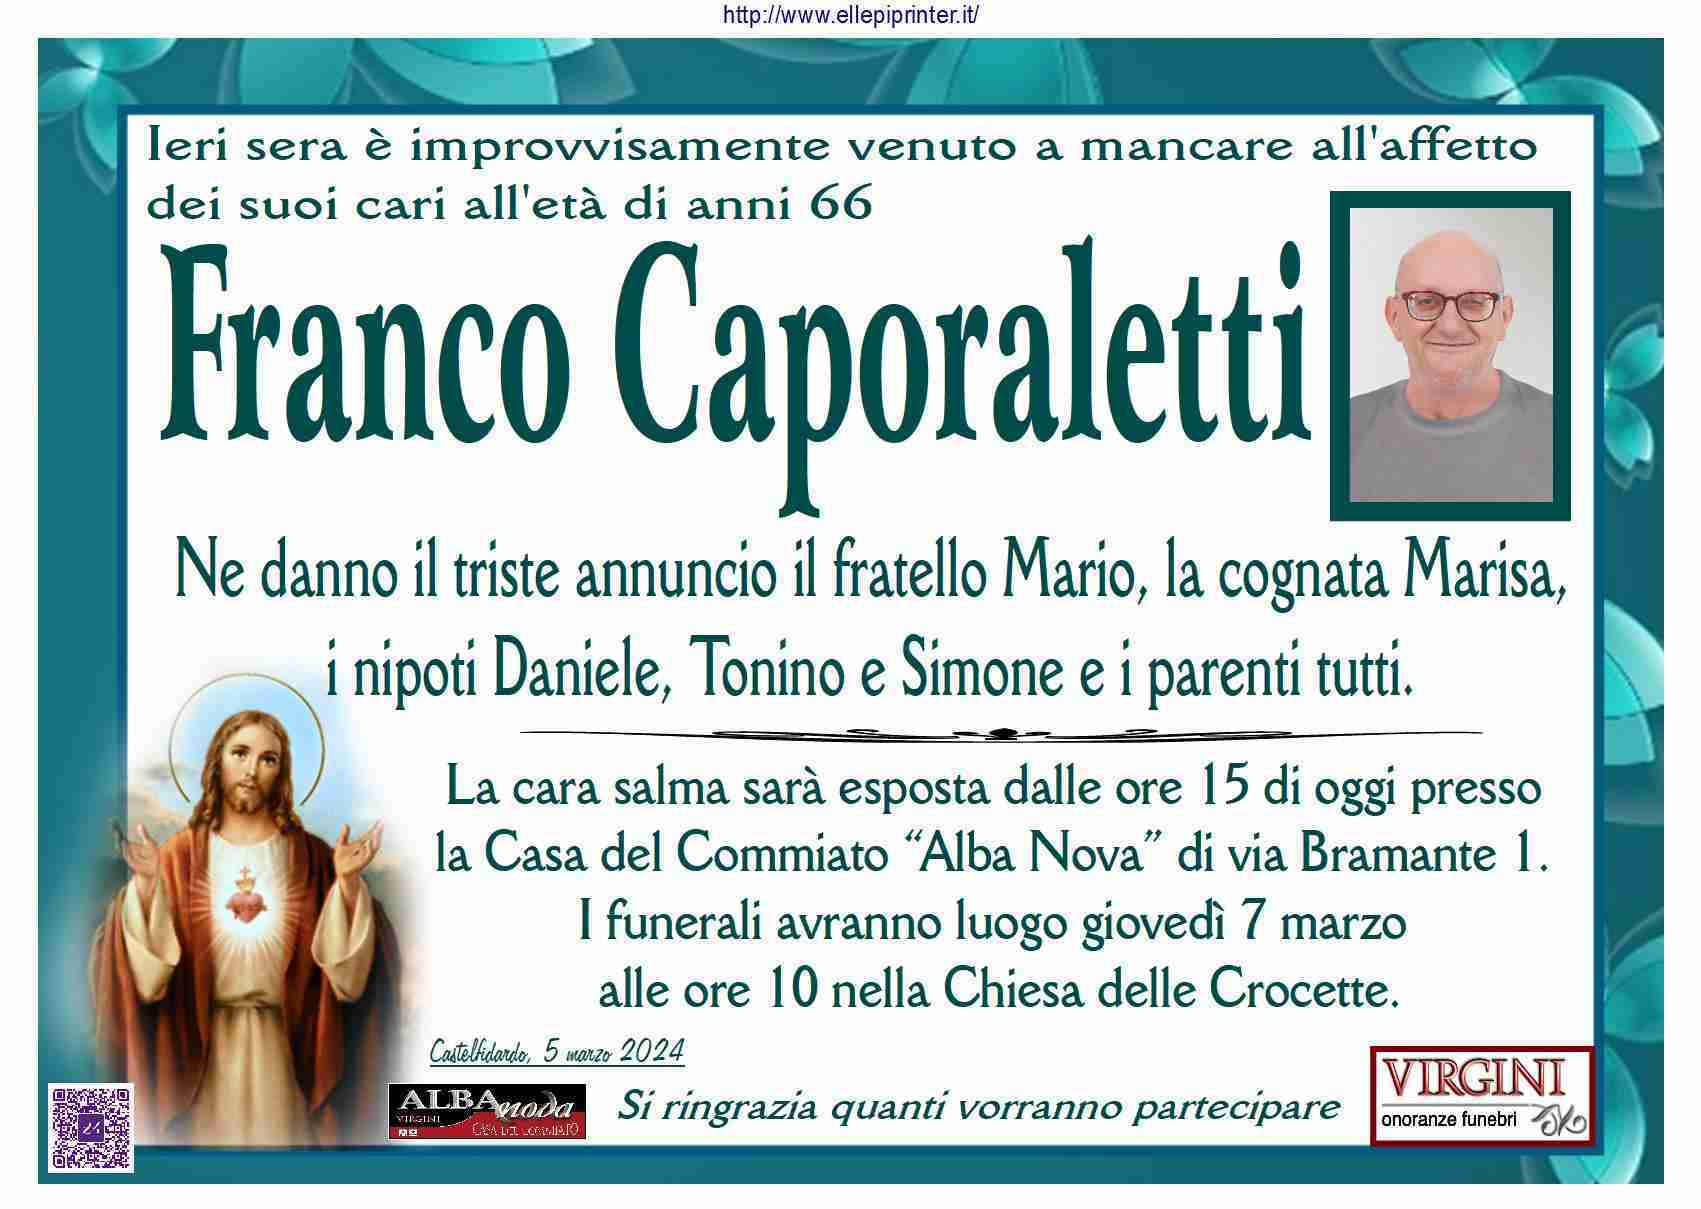 Franco Caporaletti